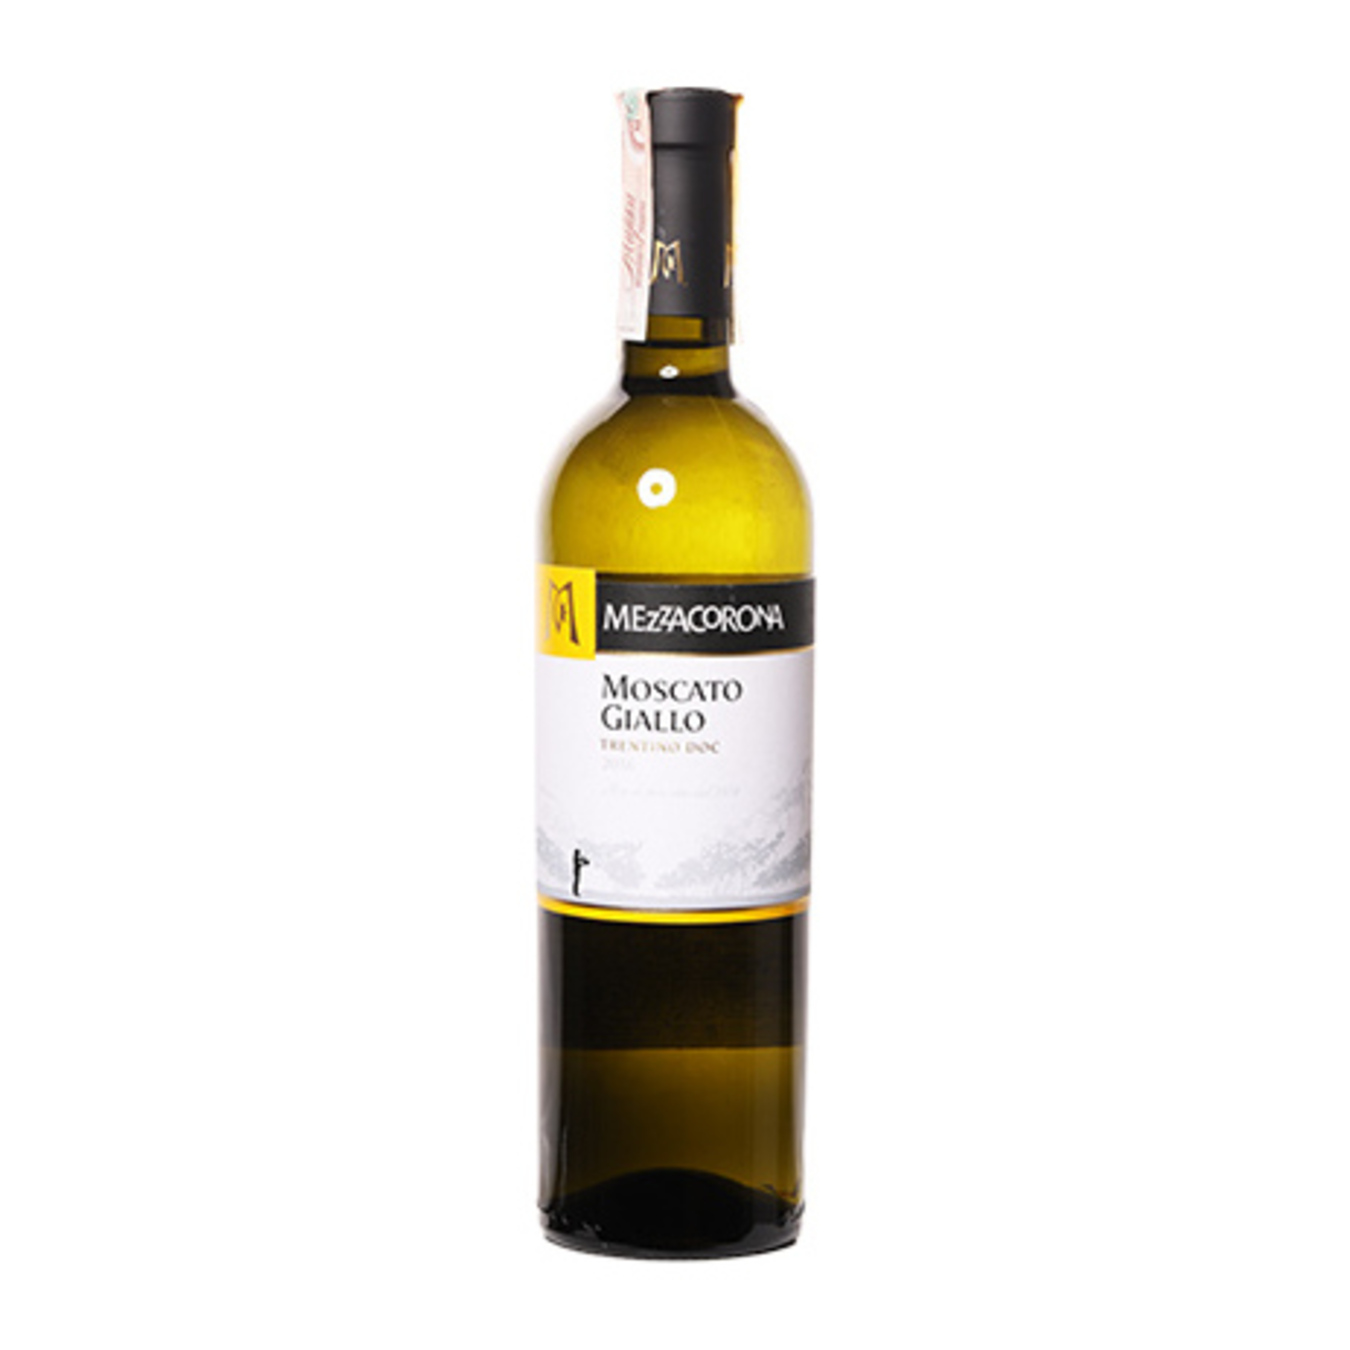 Mezzacorona Moscato Giallo Trentino DOC white semi-sweet wine 11% 0.75l